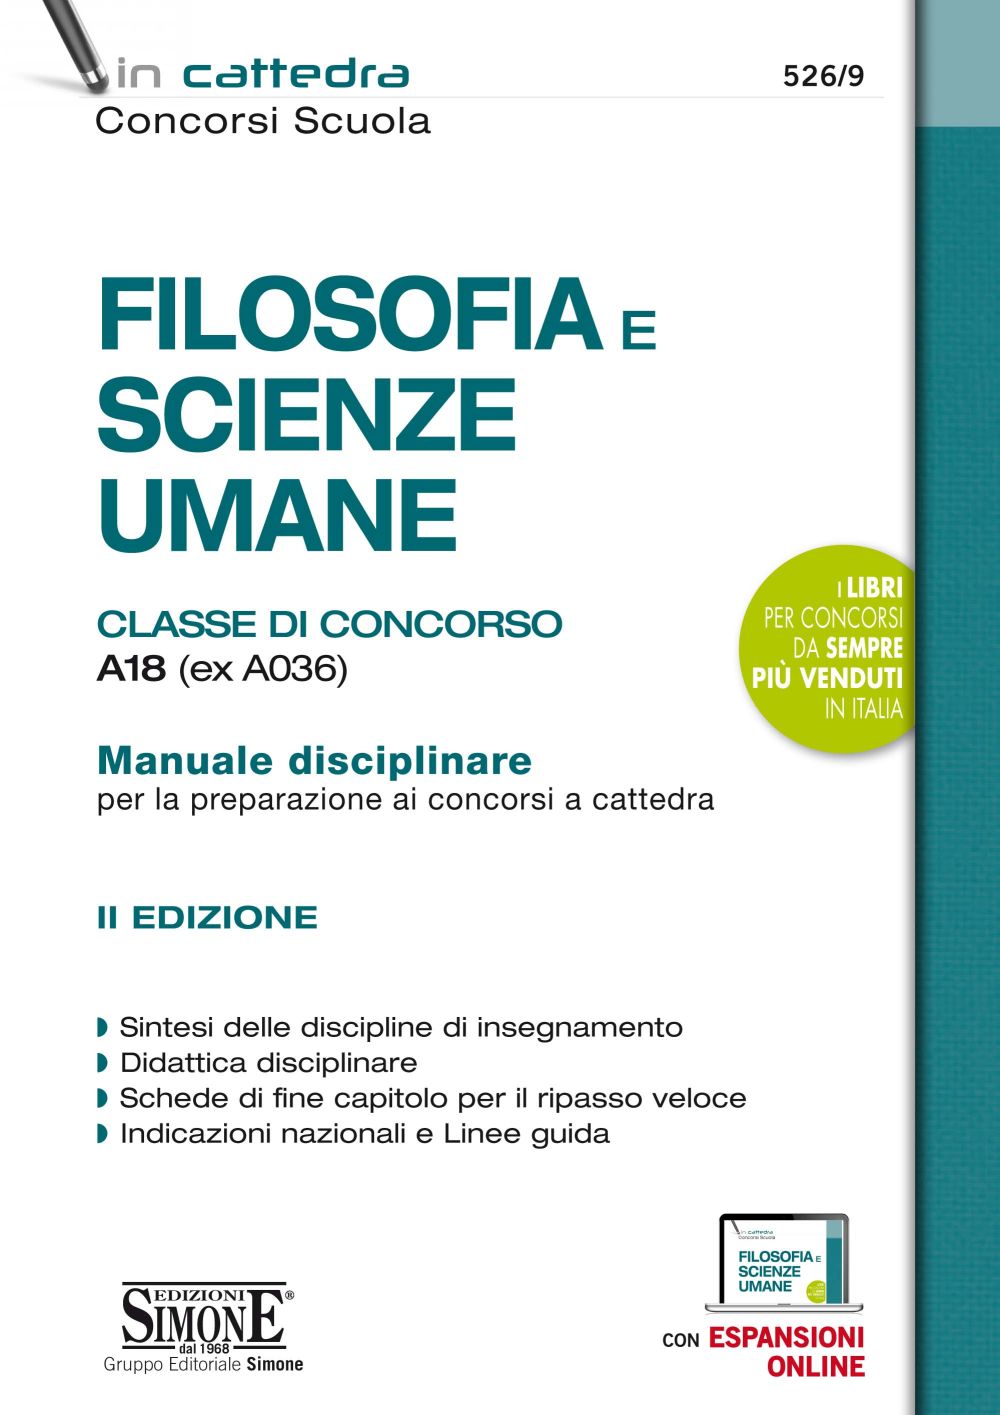 526/9　Filosofia　Umane　concorso　A036)　e　Simone　Scienze　Edizioni　Classe　di　A18　(ex